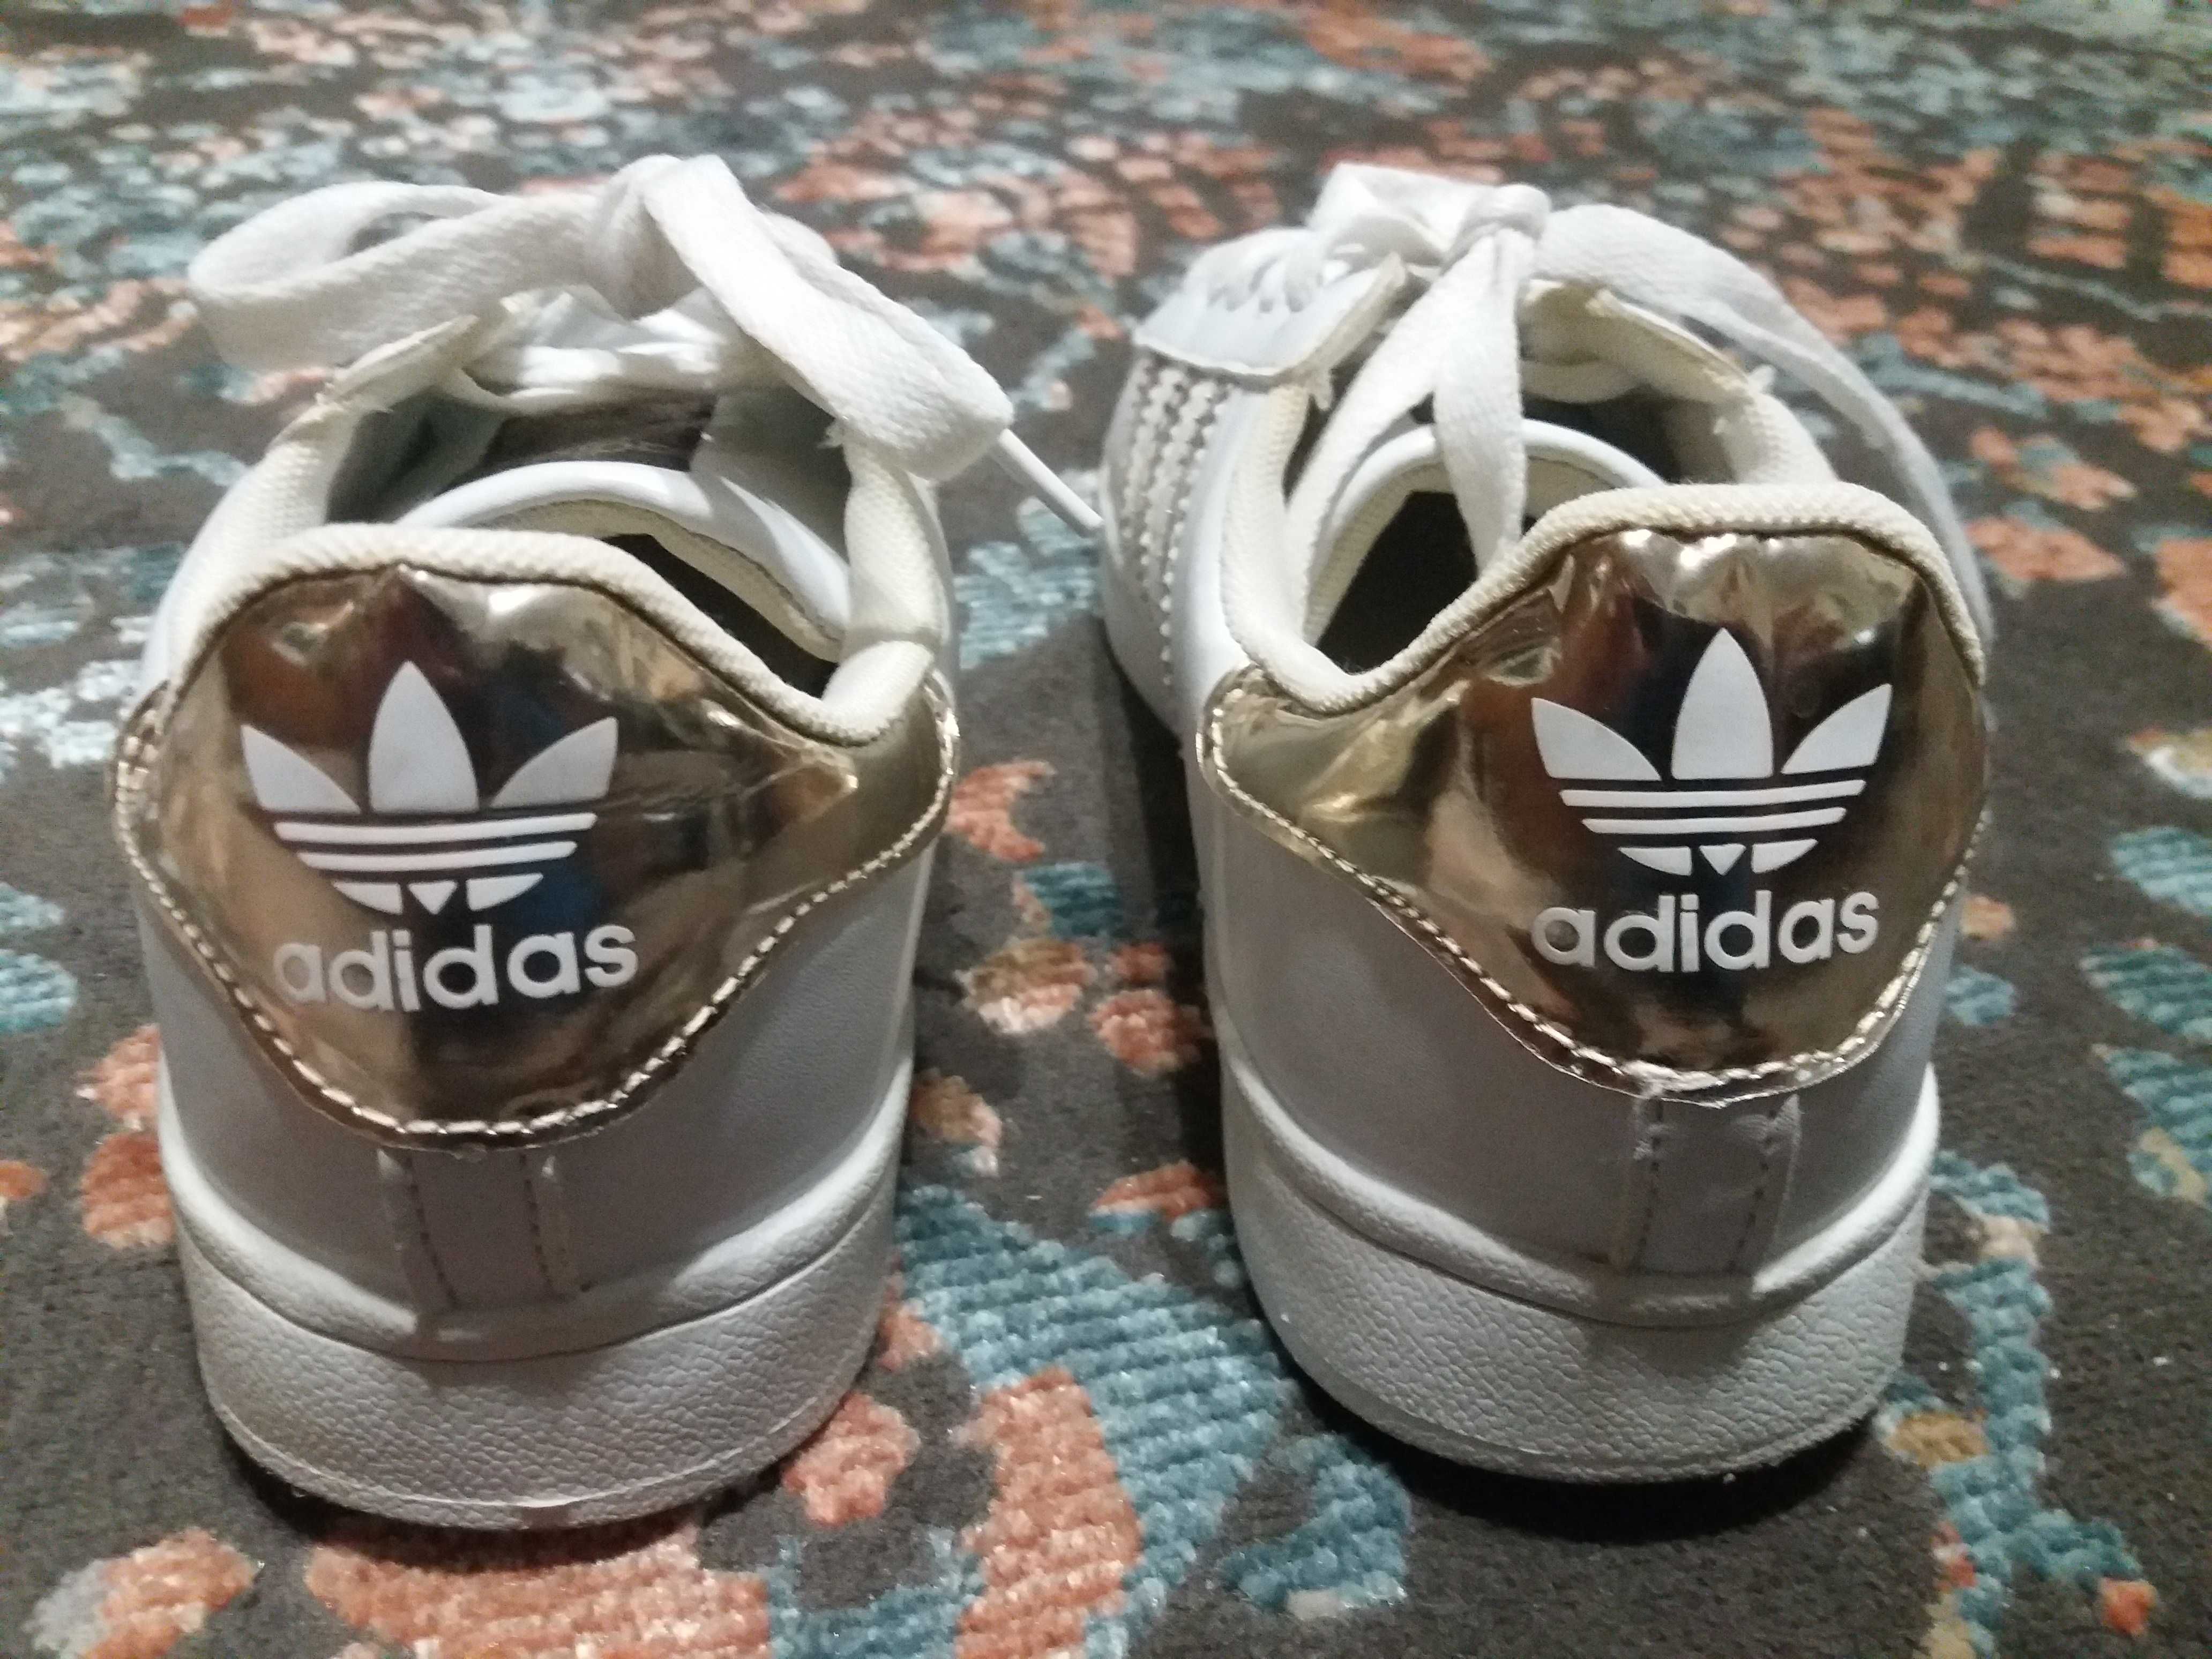 Adidas новые кроссовки.  Оригинал.